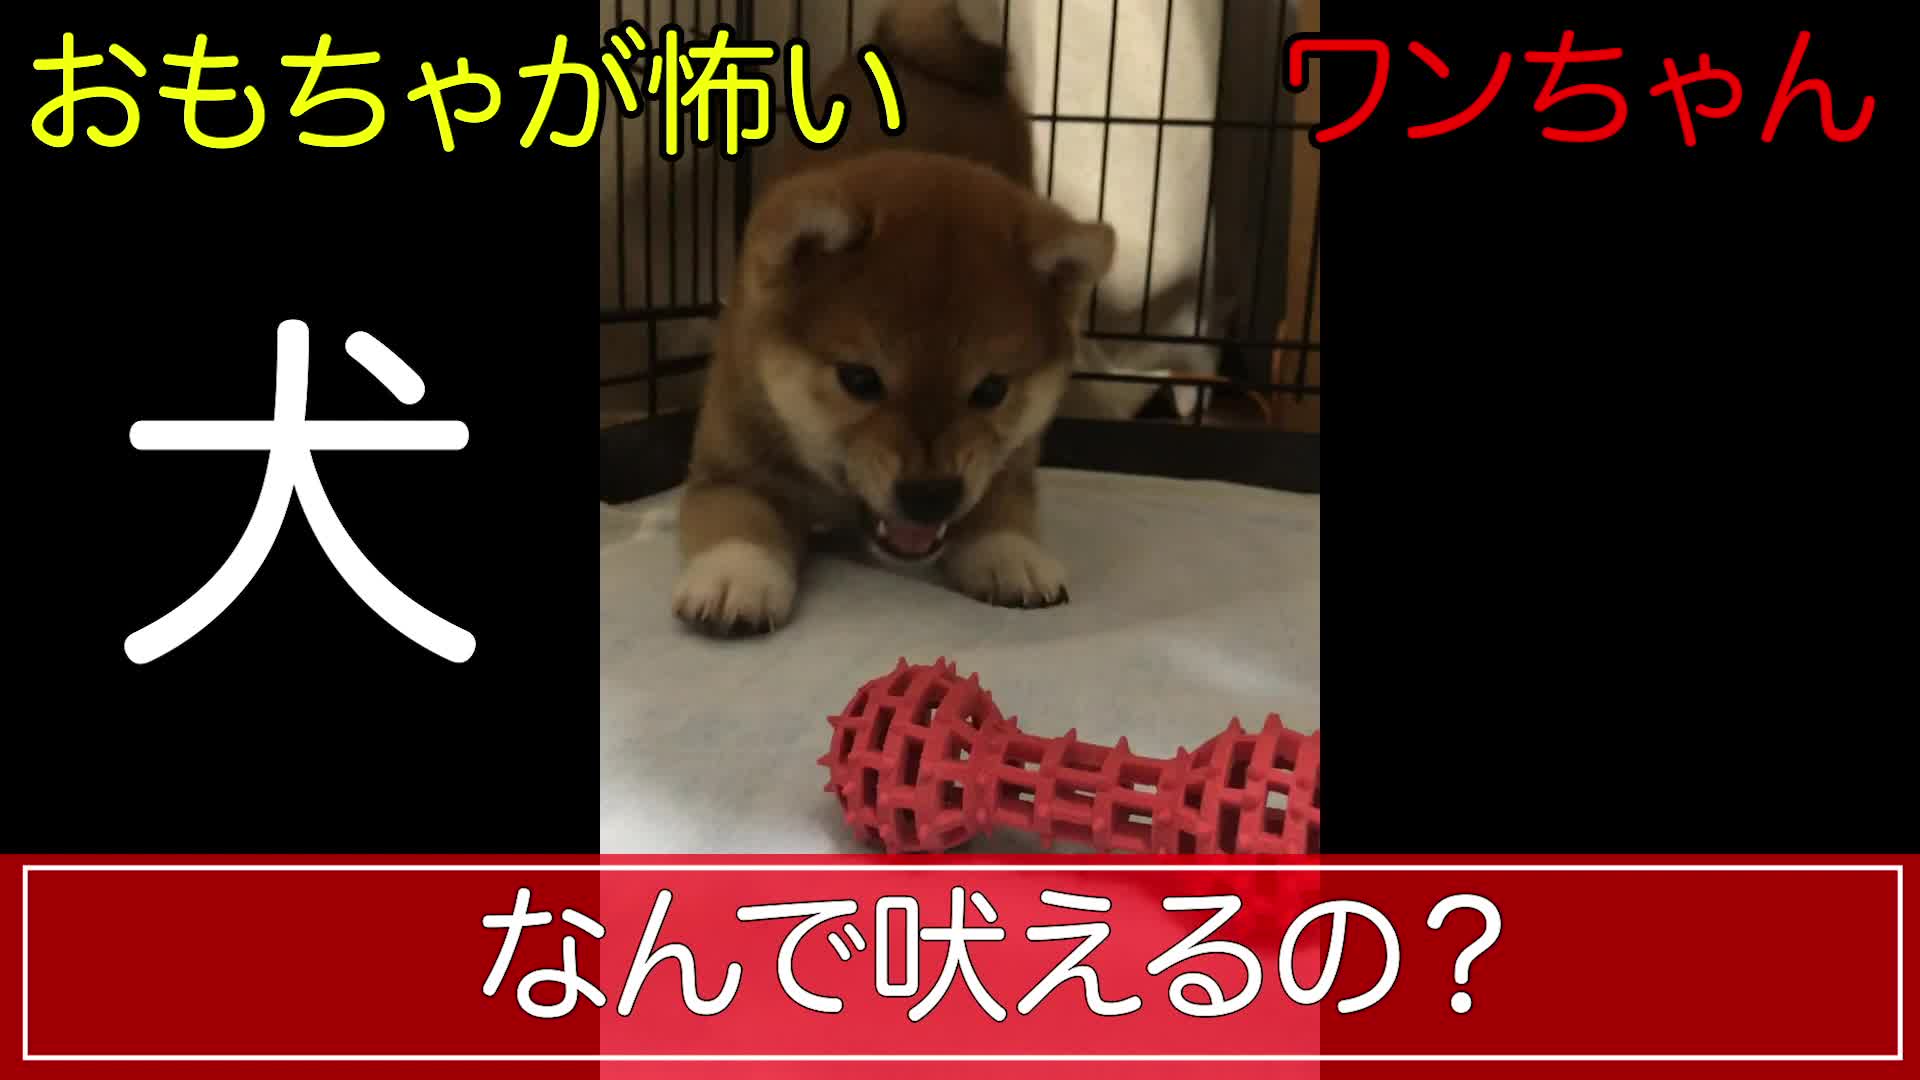 【珍百景】おもちゃを怖がる生後2ヶ月の子犬 videocash/ビデオキャッシュ Yahoo! JAPAN